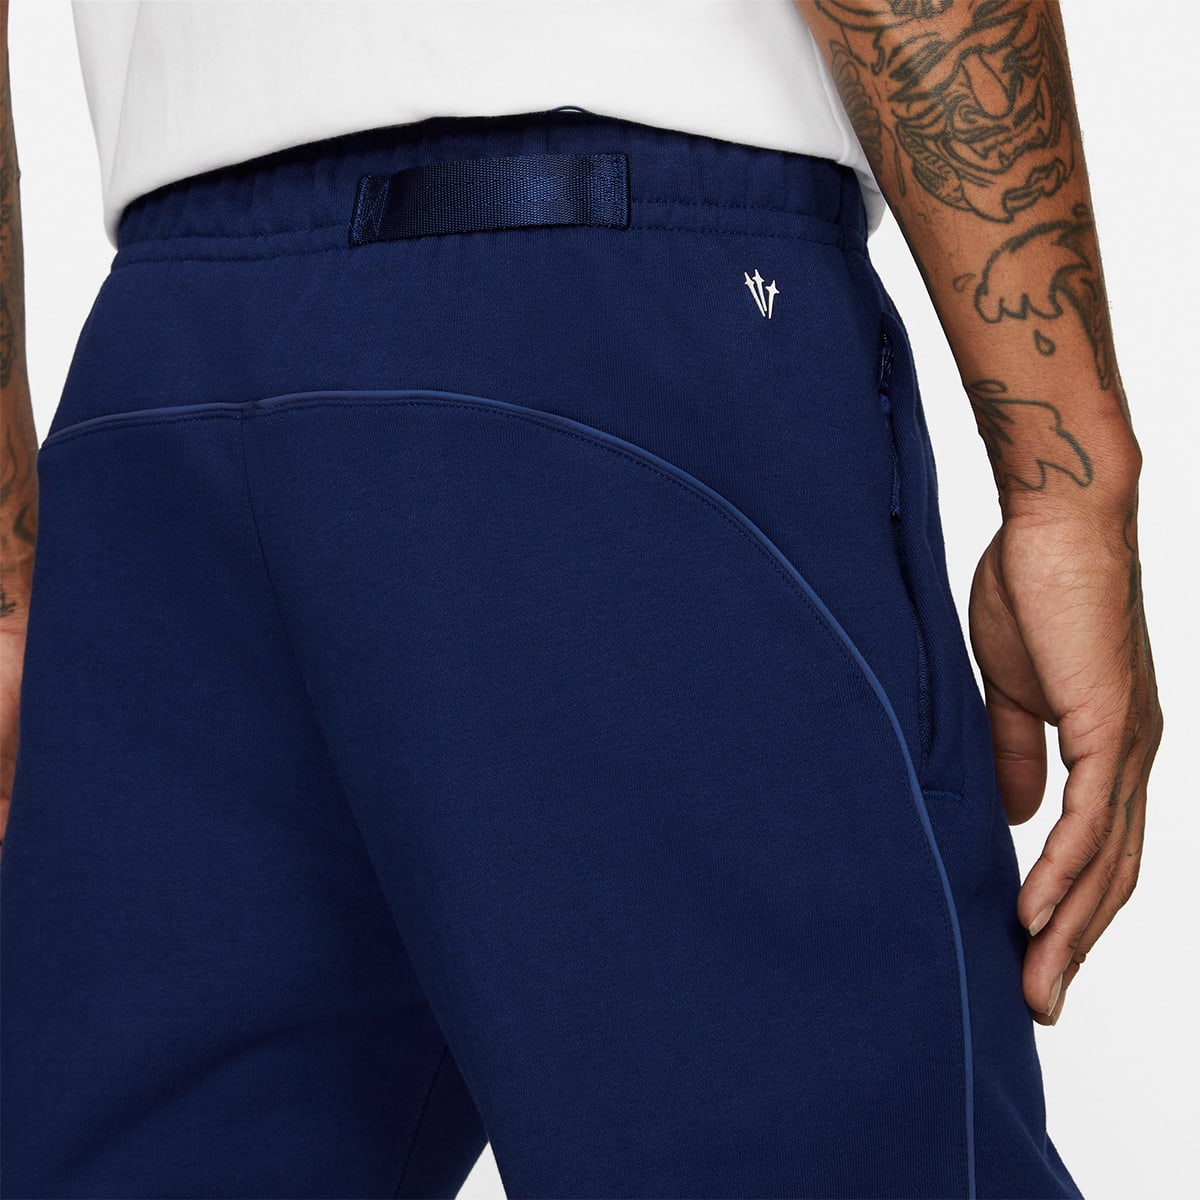 Nike x NOCTA Au Essential Fleece Pant (Blue Void & White) | END. Launches